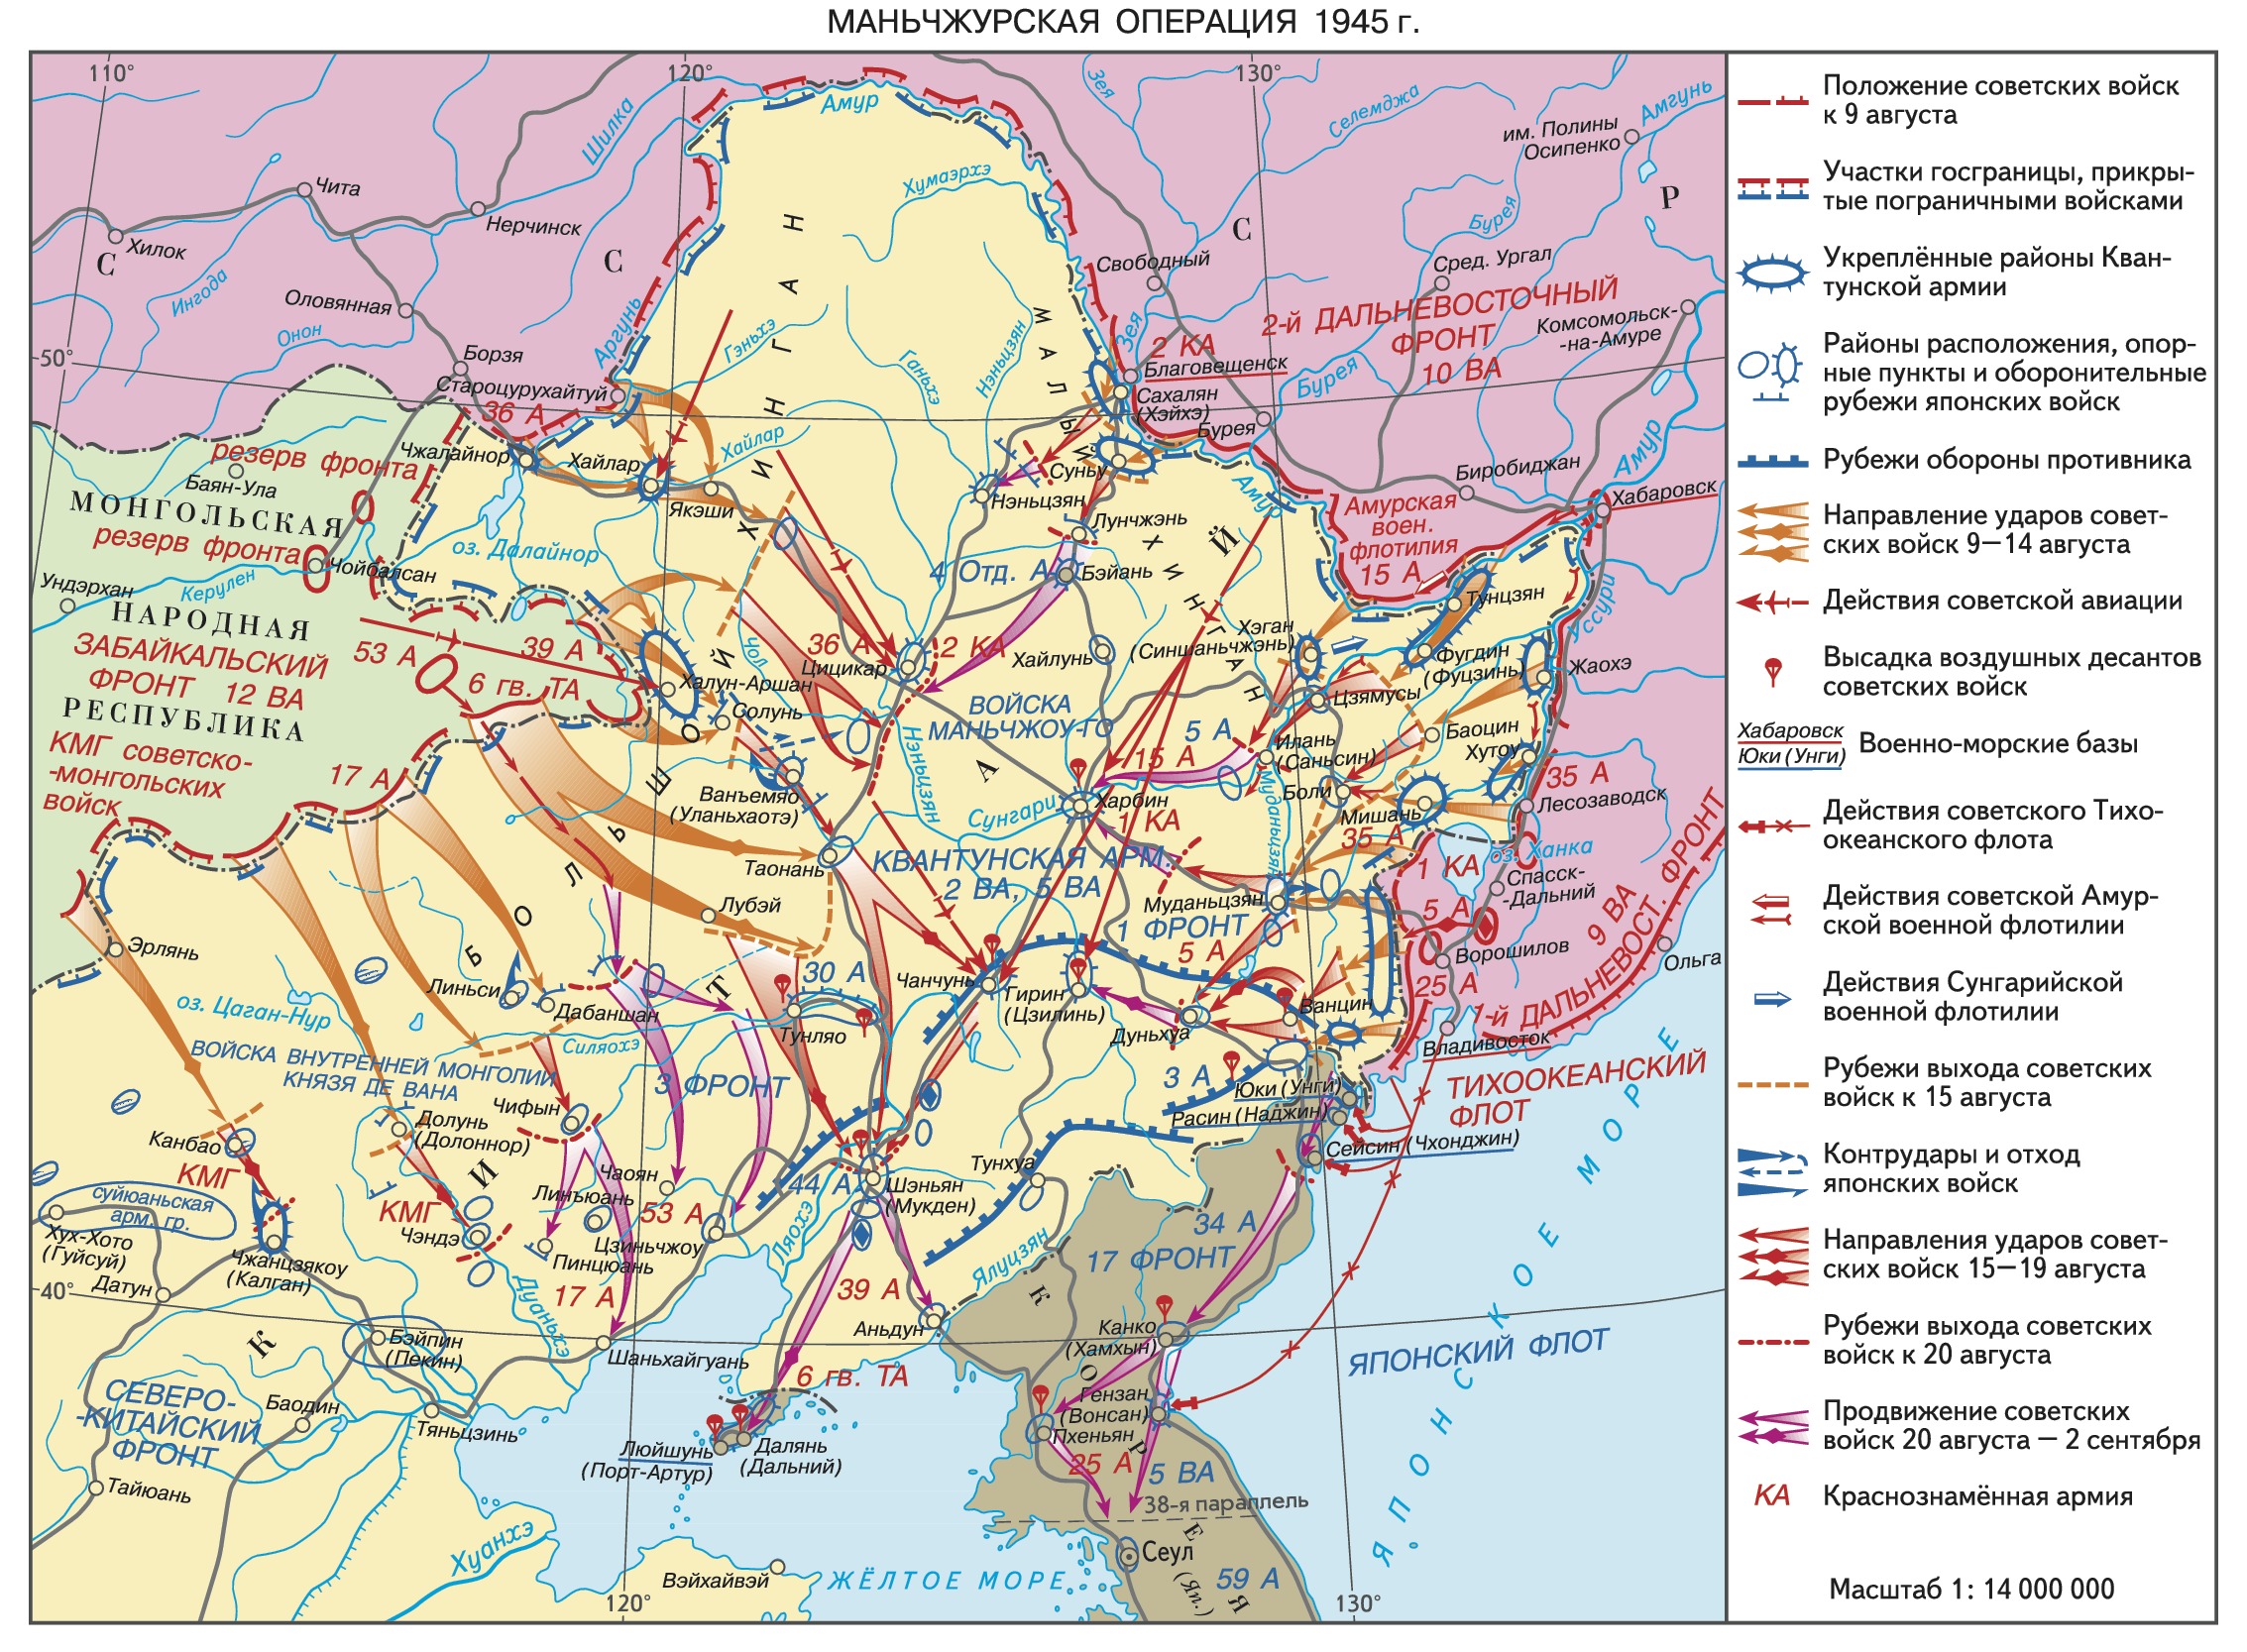 9 августа япония. Карта маньчжурской наступательной операции 1945. Маньчжурская наступательная операция 9 августа 2 сентября 1945 г. Операция в Маньчжурии 1945 карта.